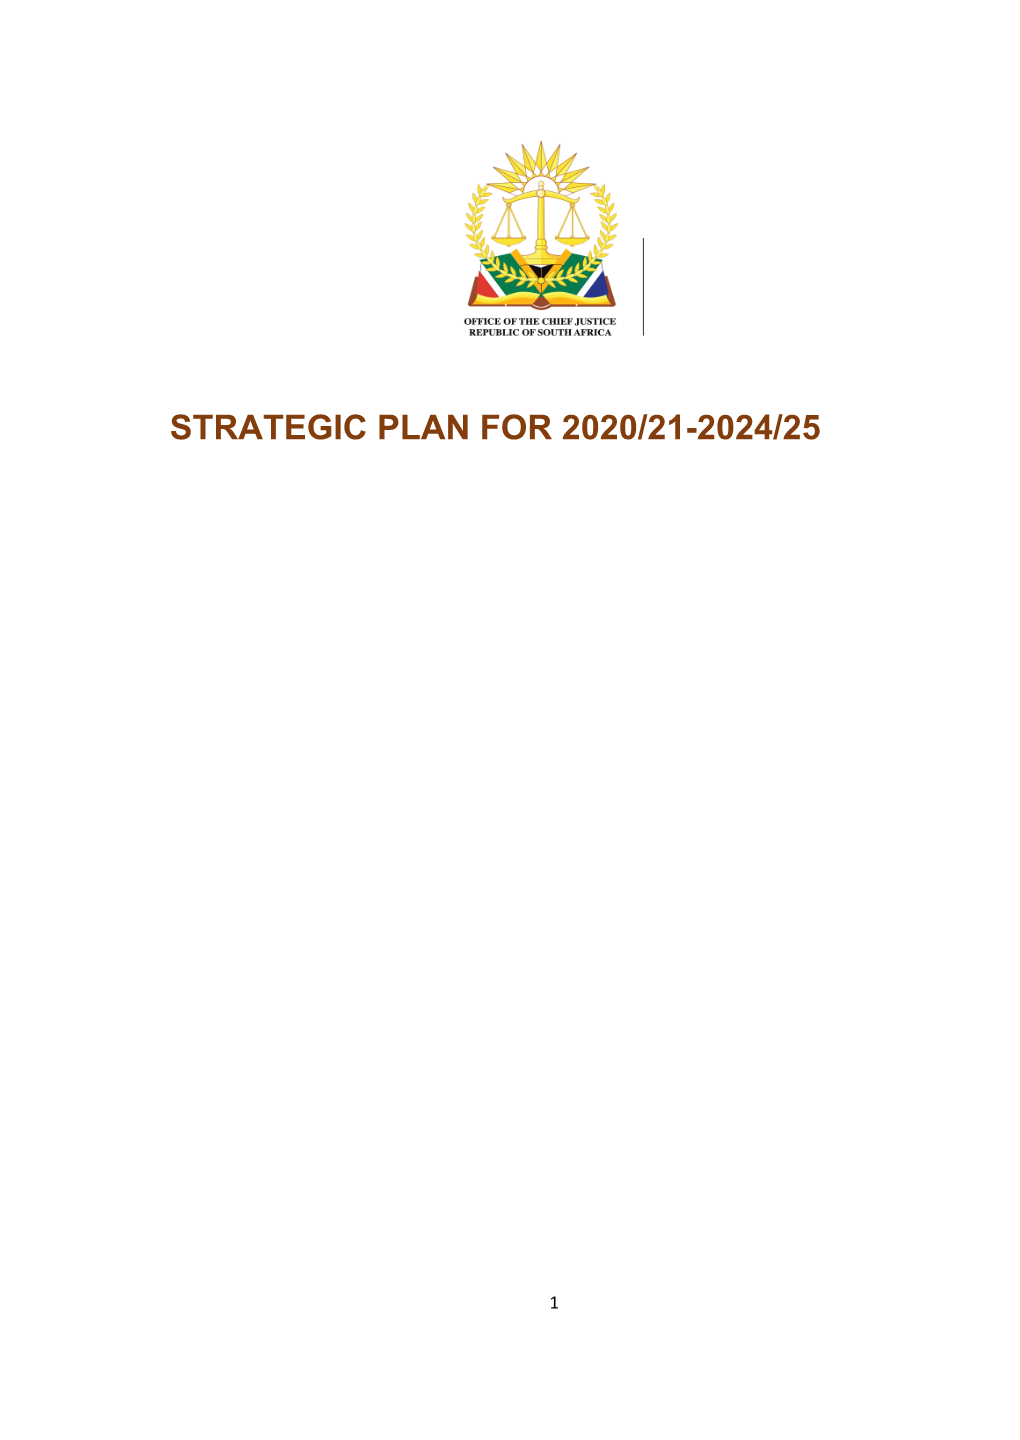 Strategic Plan for 2020/21-2024/25